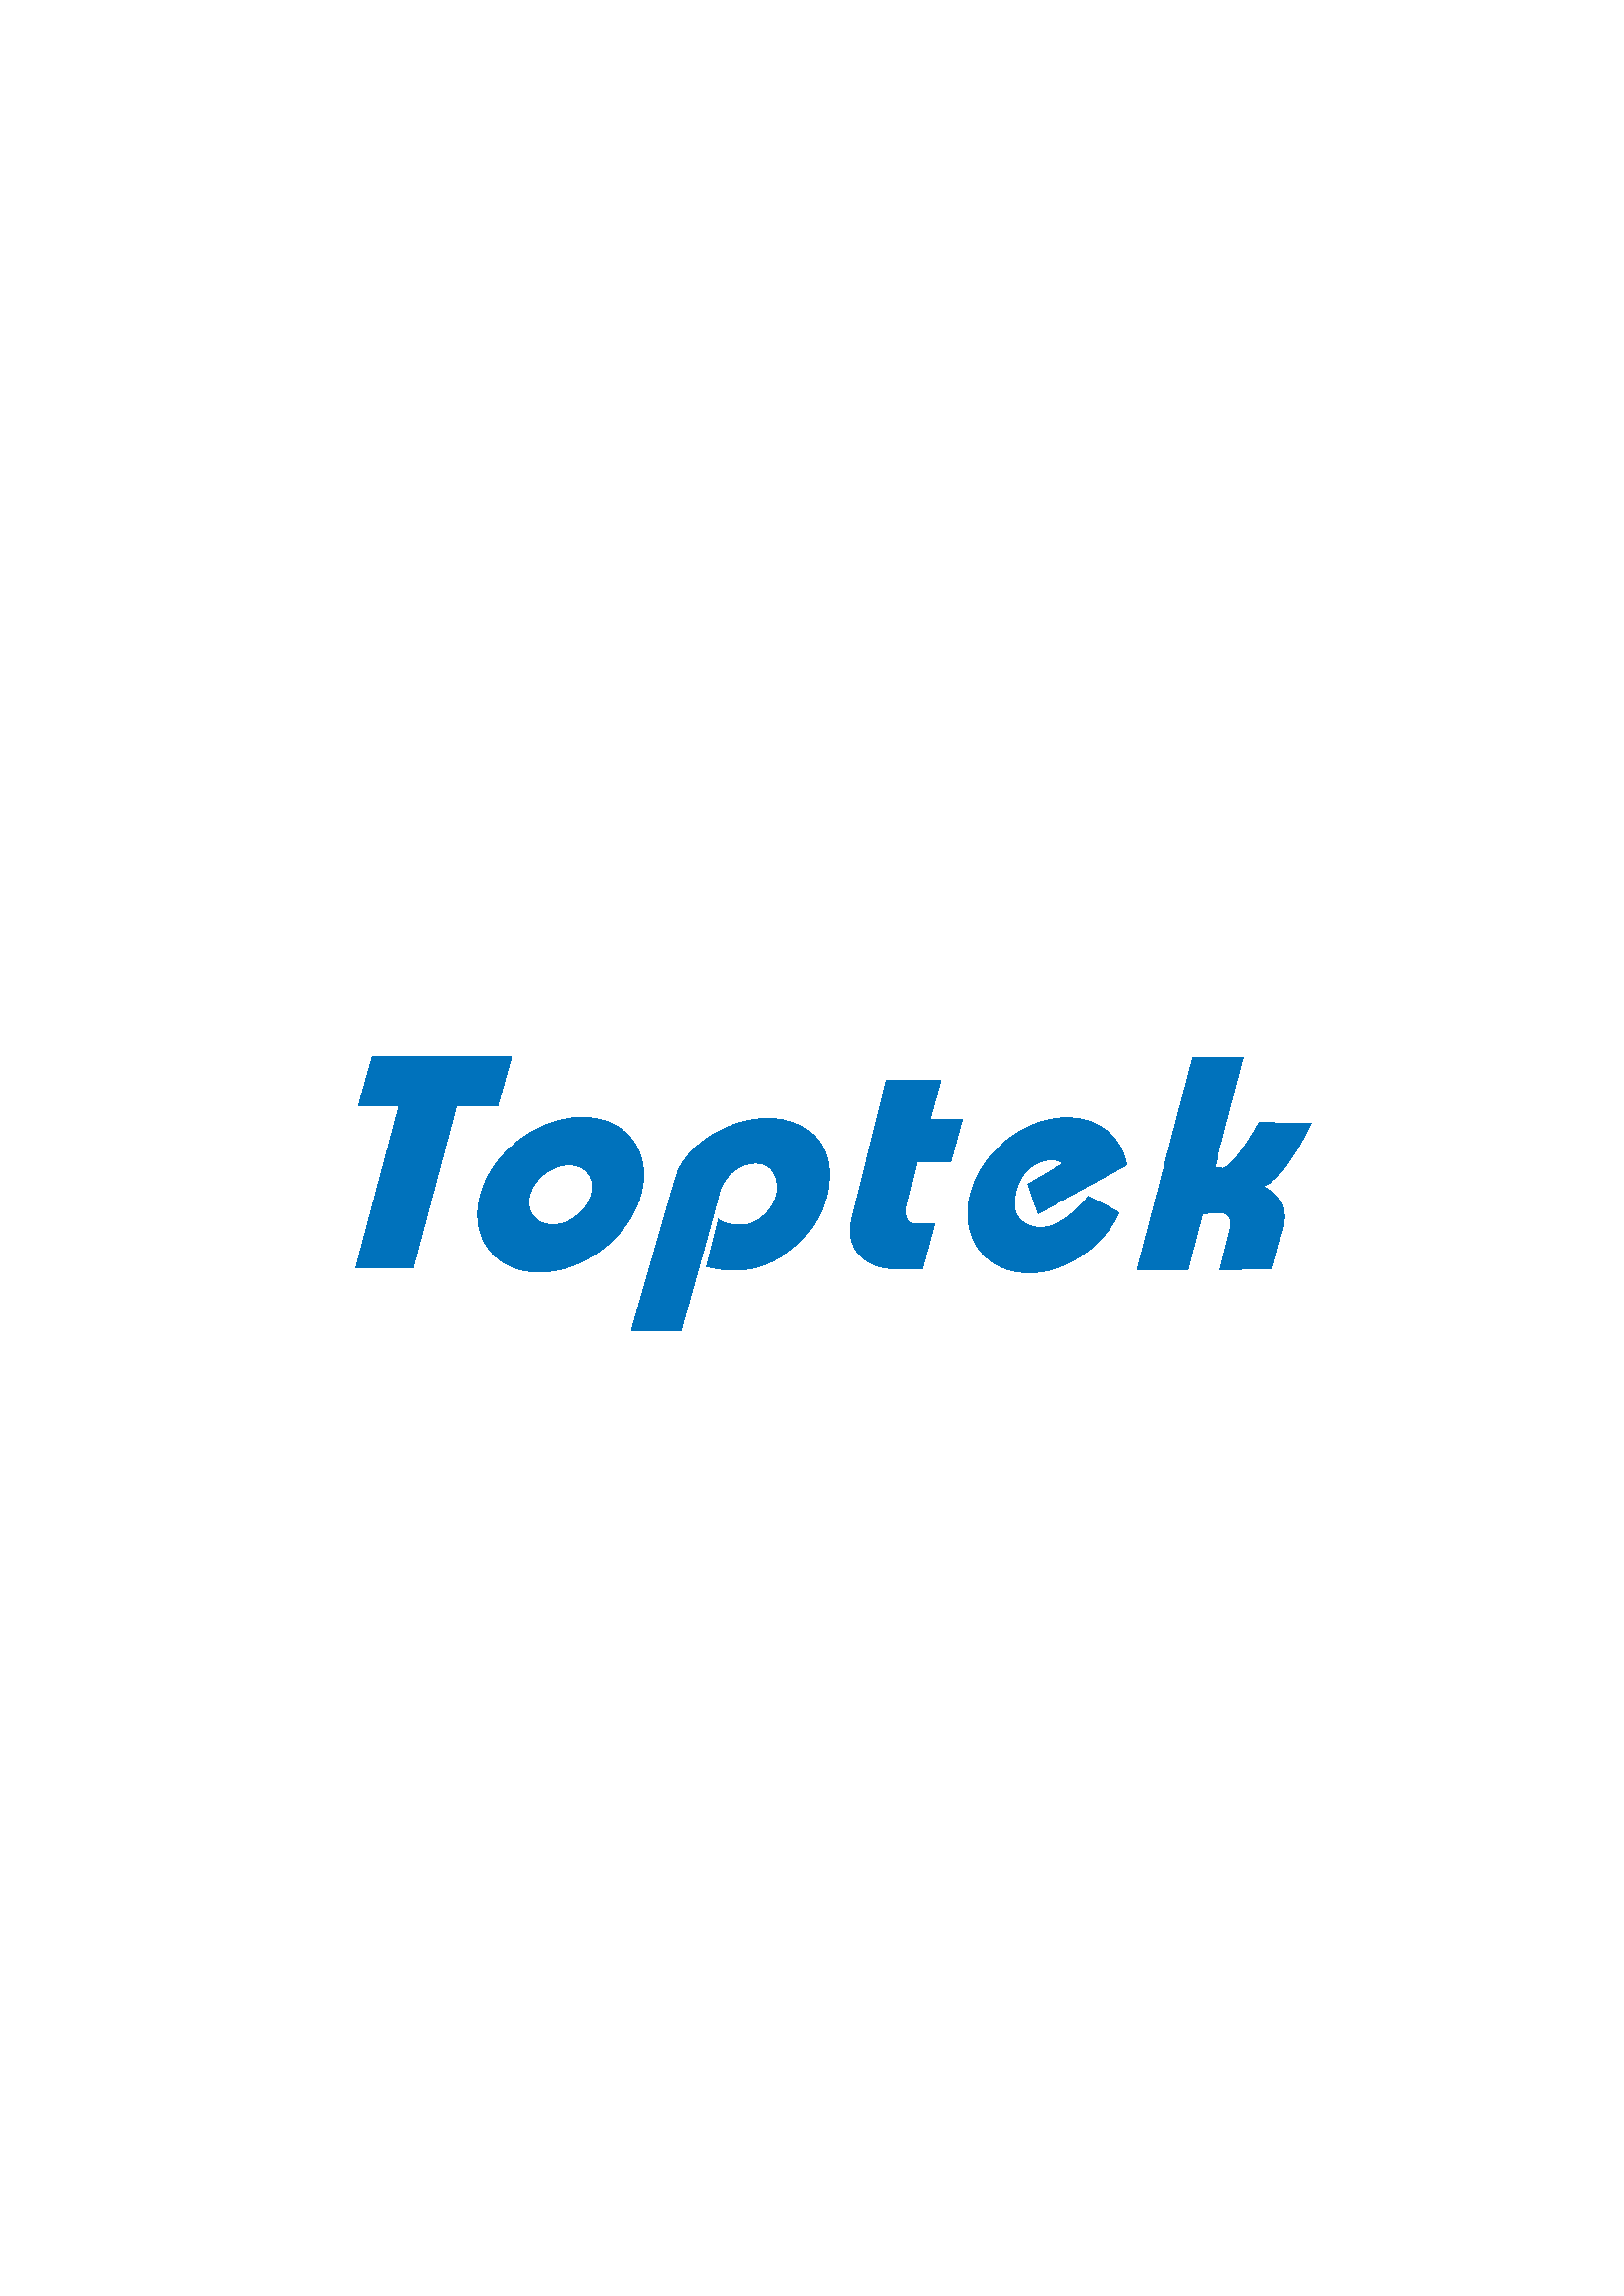 TOPTEK AUTOMATION CO., LTD.